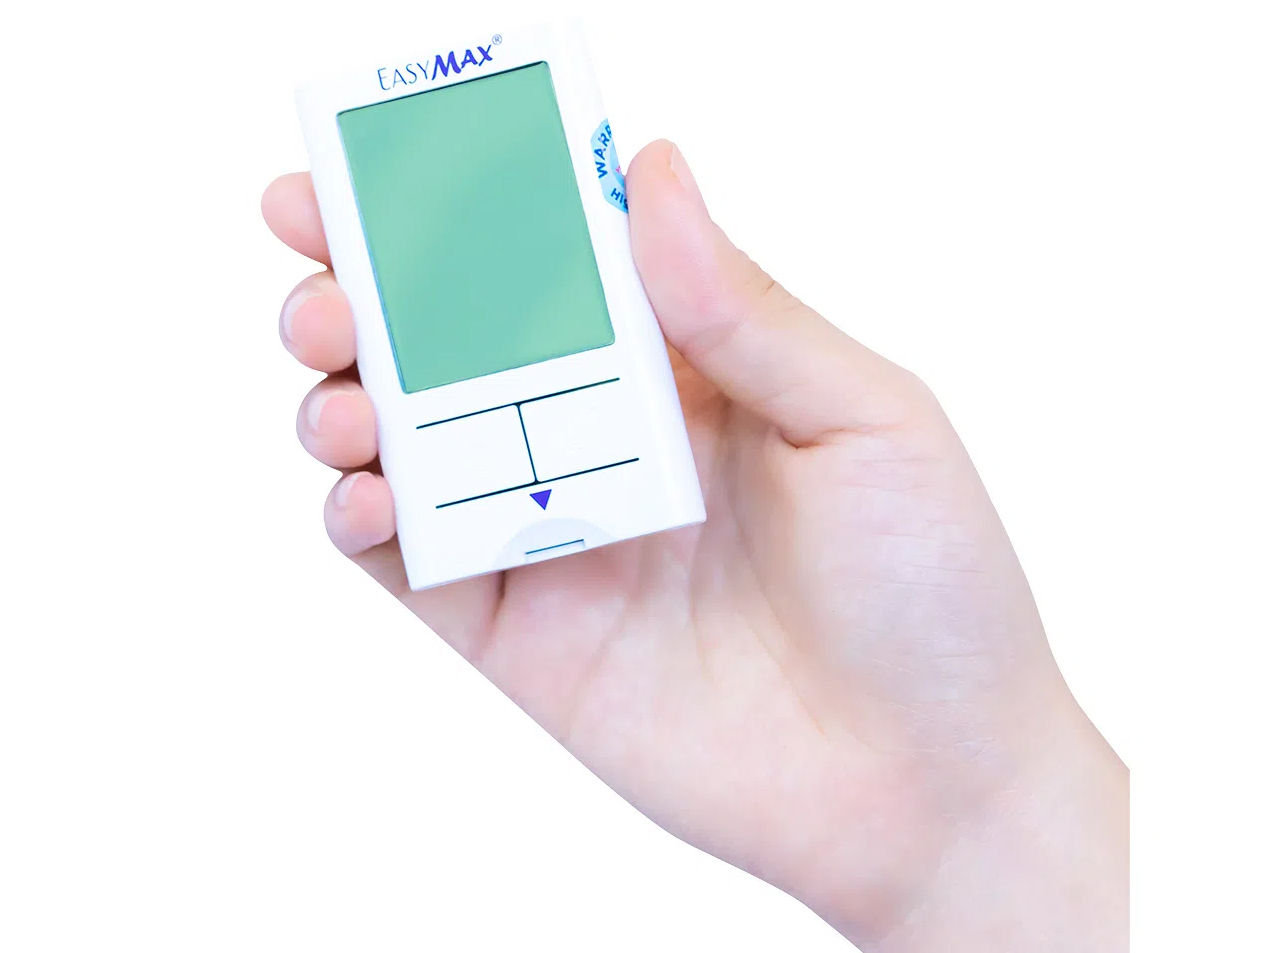 Máy đo đường huyết Easymax Mini